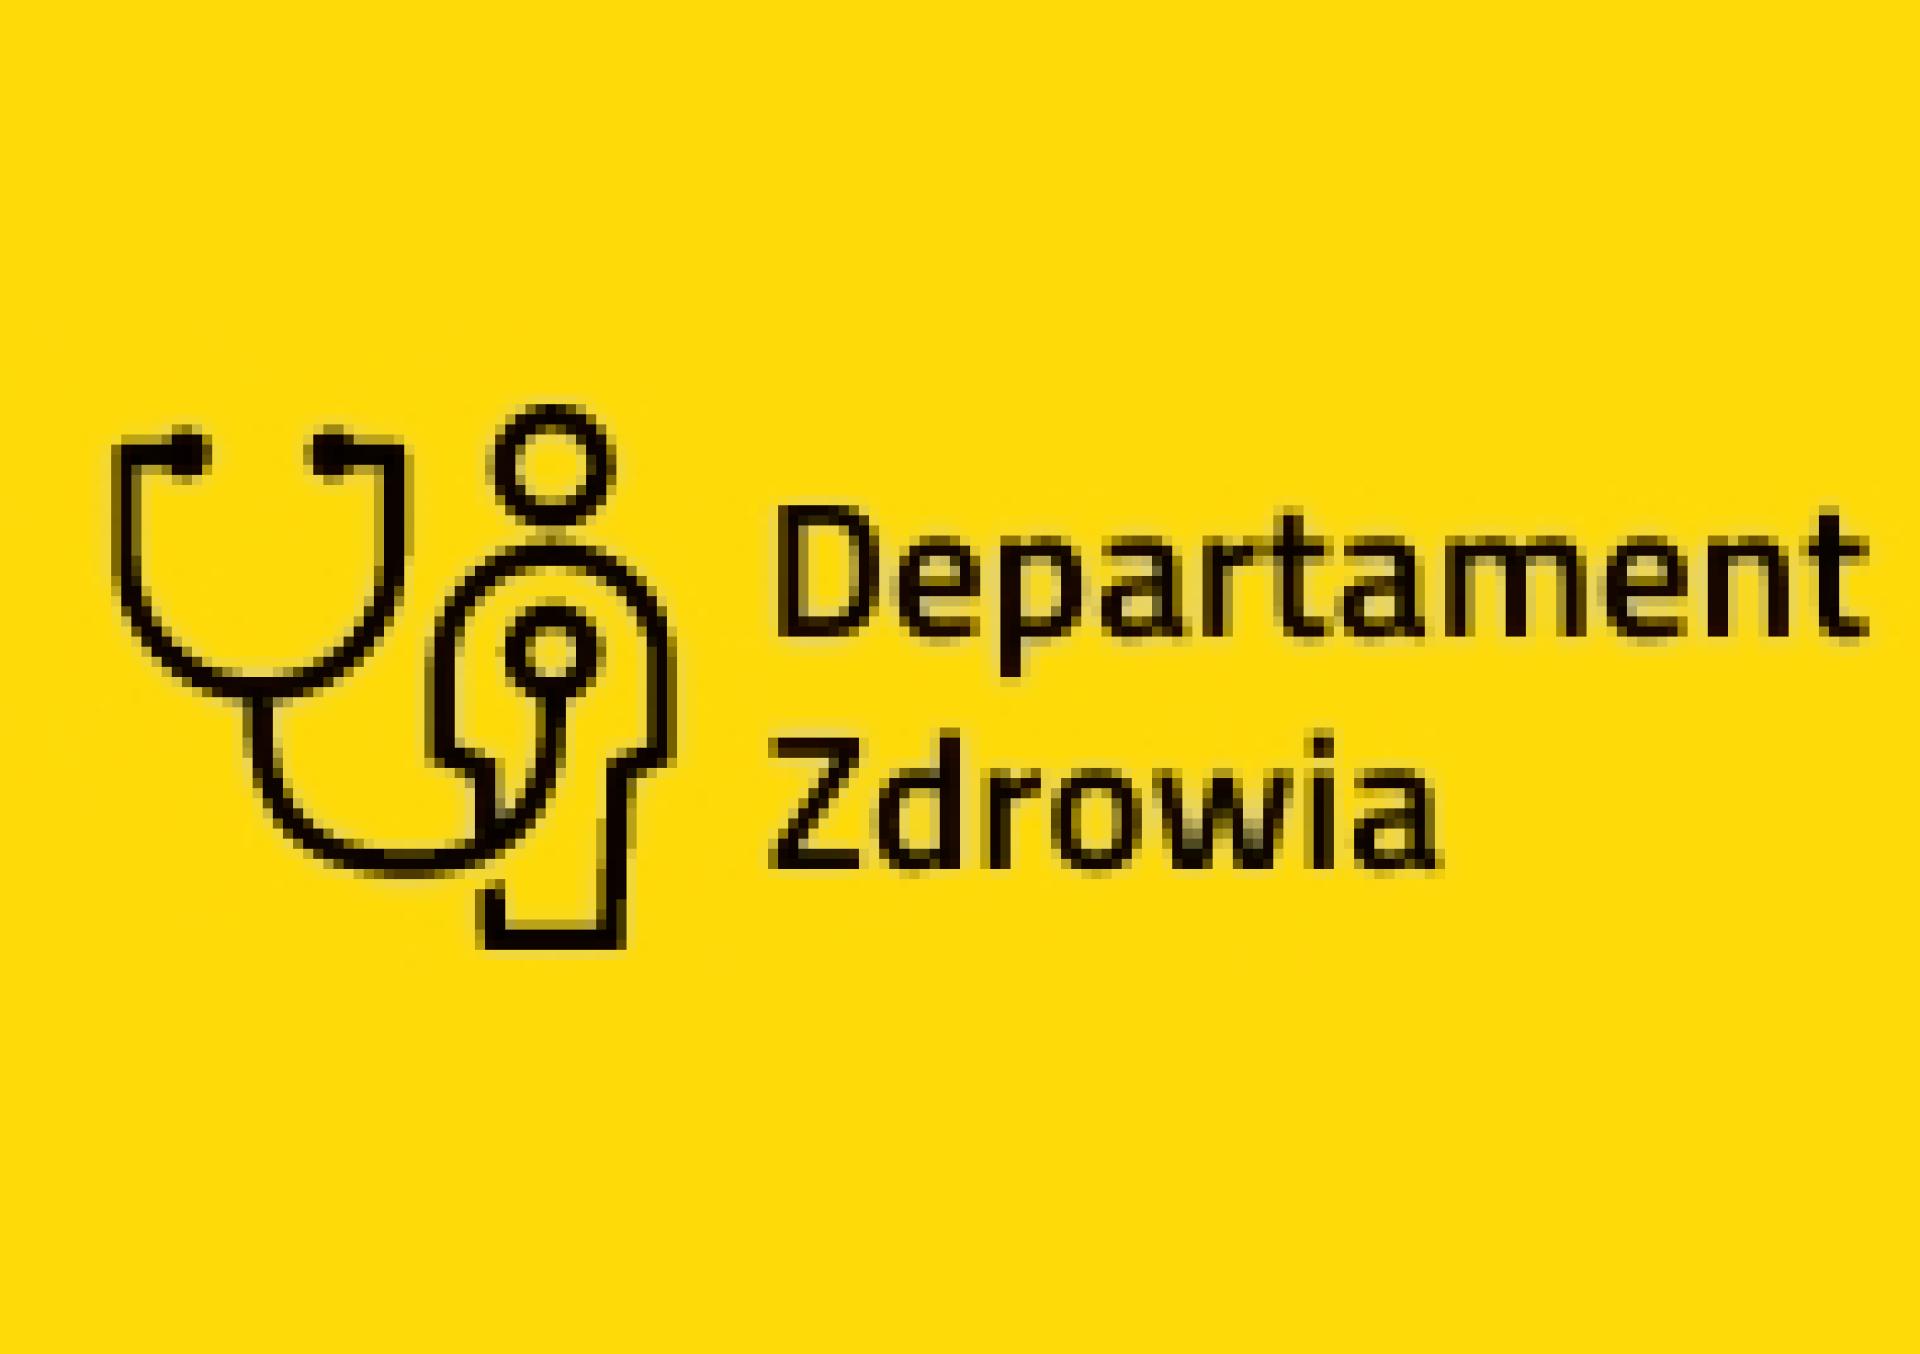 Wybór realizatorów Programu polityki zdrowotnej profilaktyki i wczesnego wykrywania osteoporozy dla mieszkańców województwa wielkopolskiego” w 2023 roku - zobacz więcej